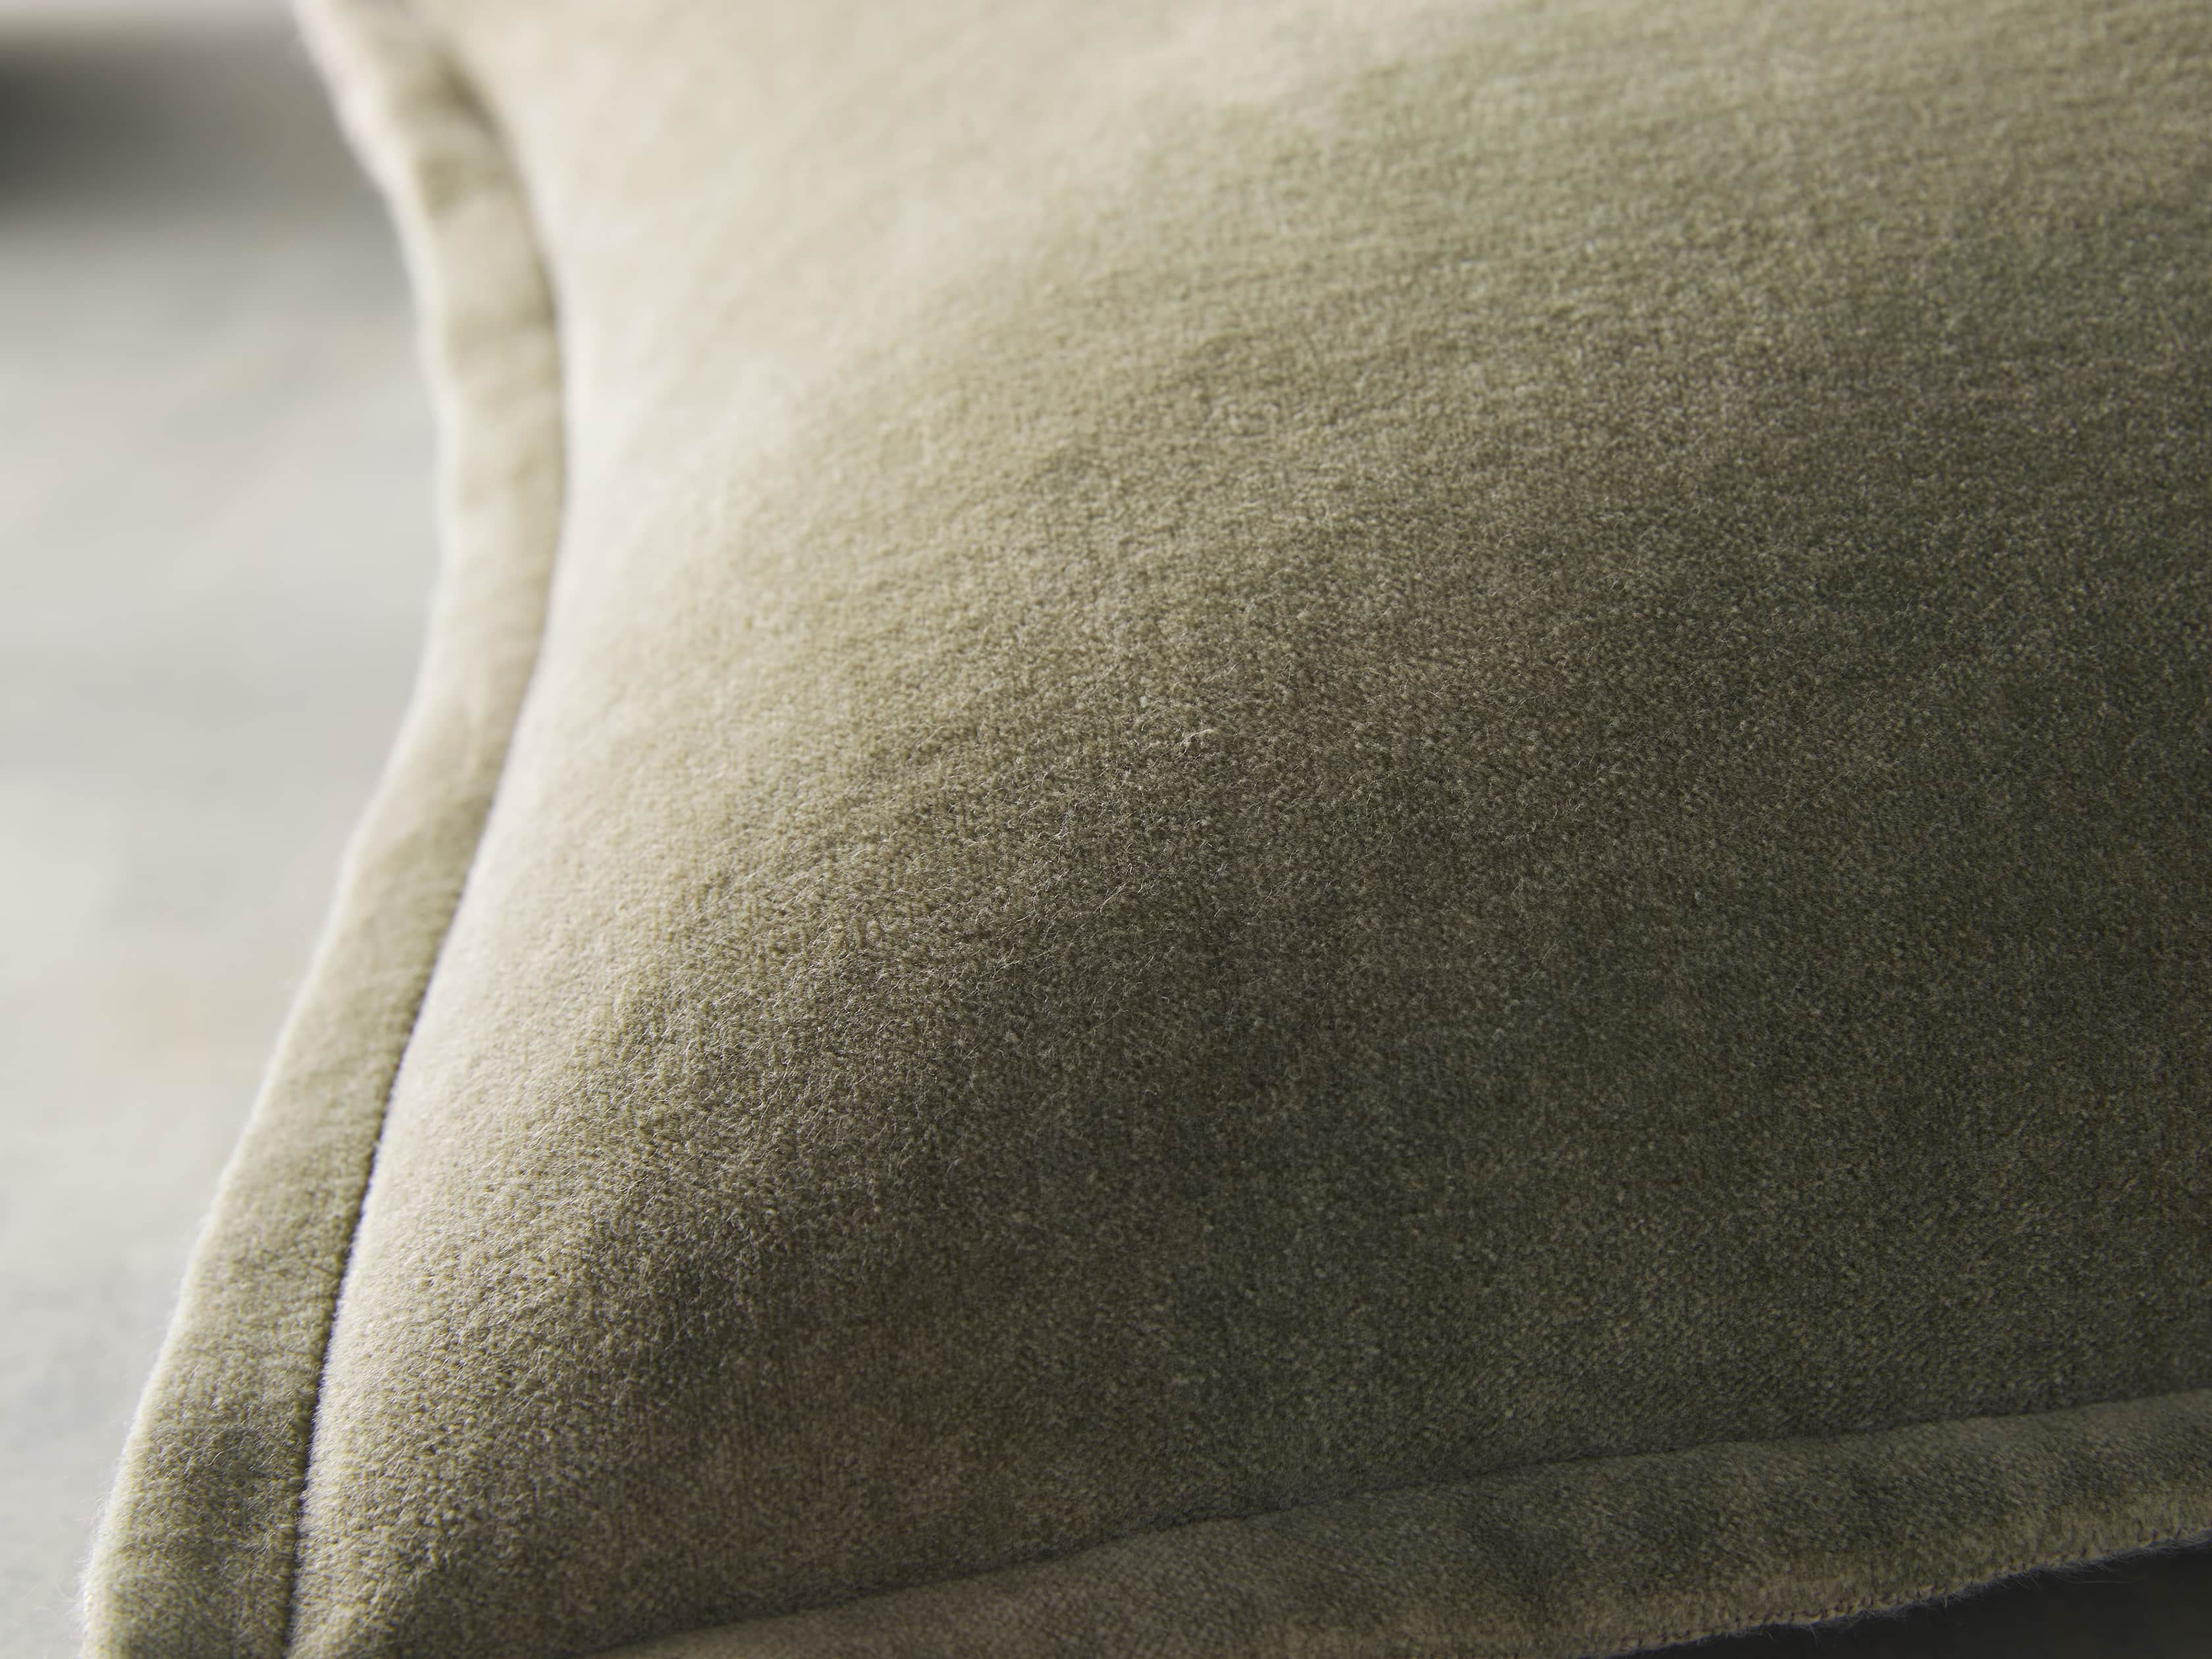 Basket Weave Lumbar Pillow Cover Hide in Brown | Arhaus